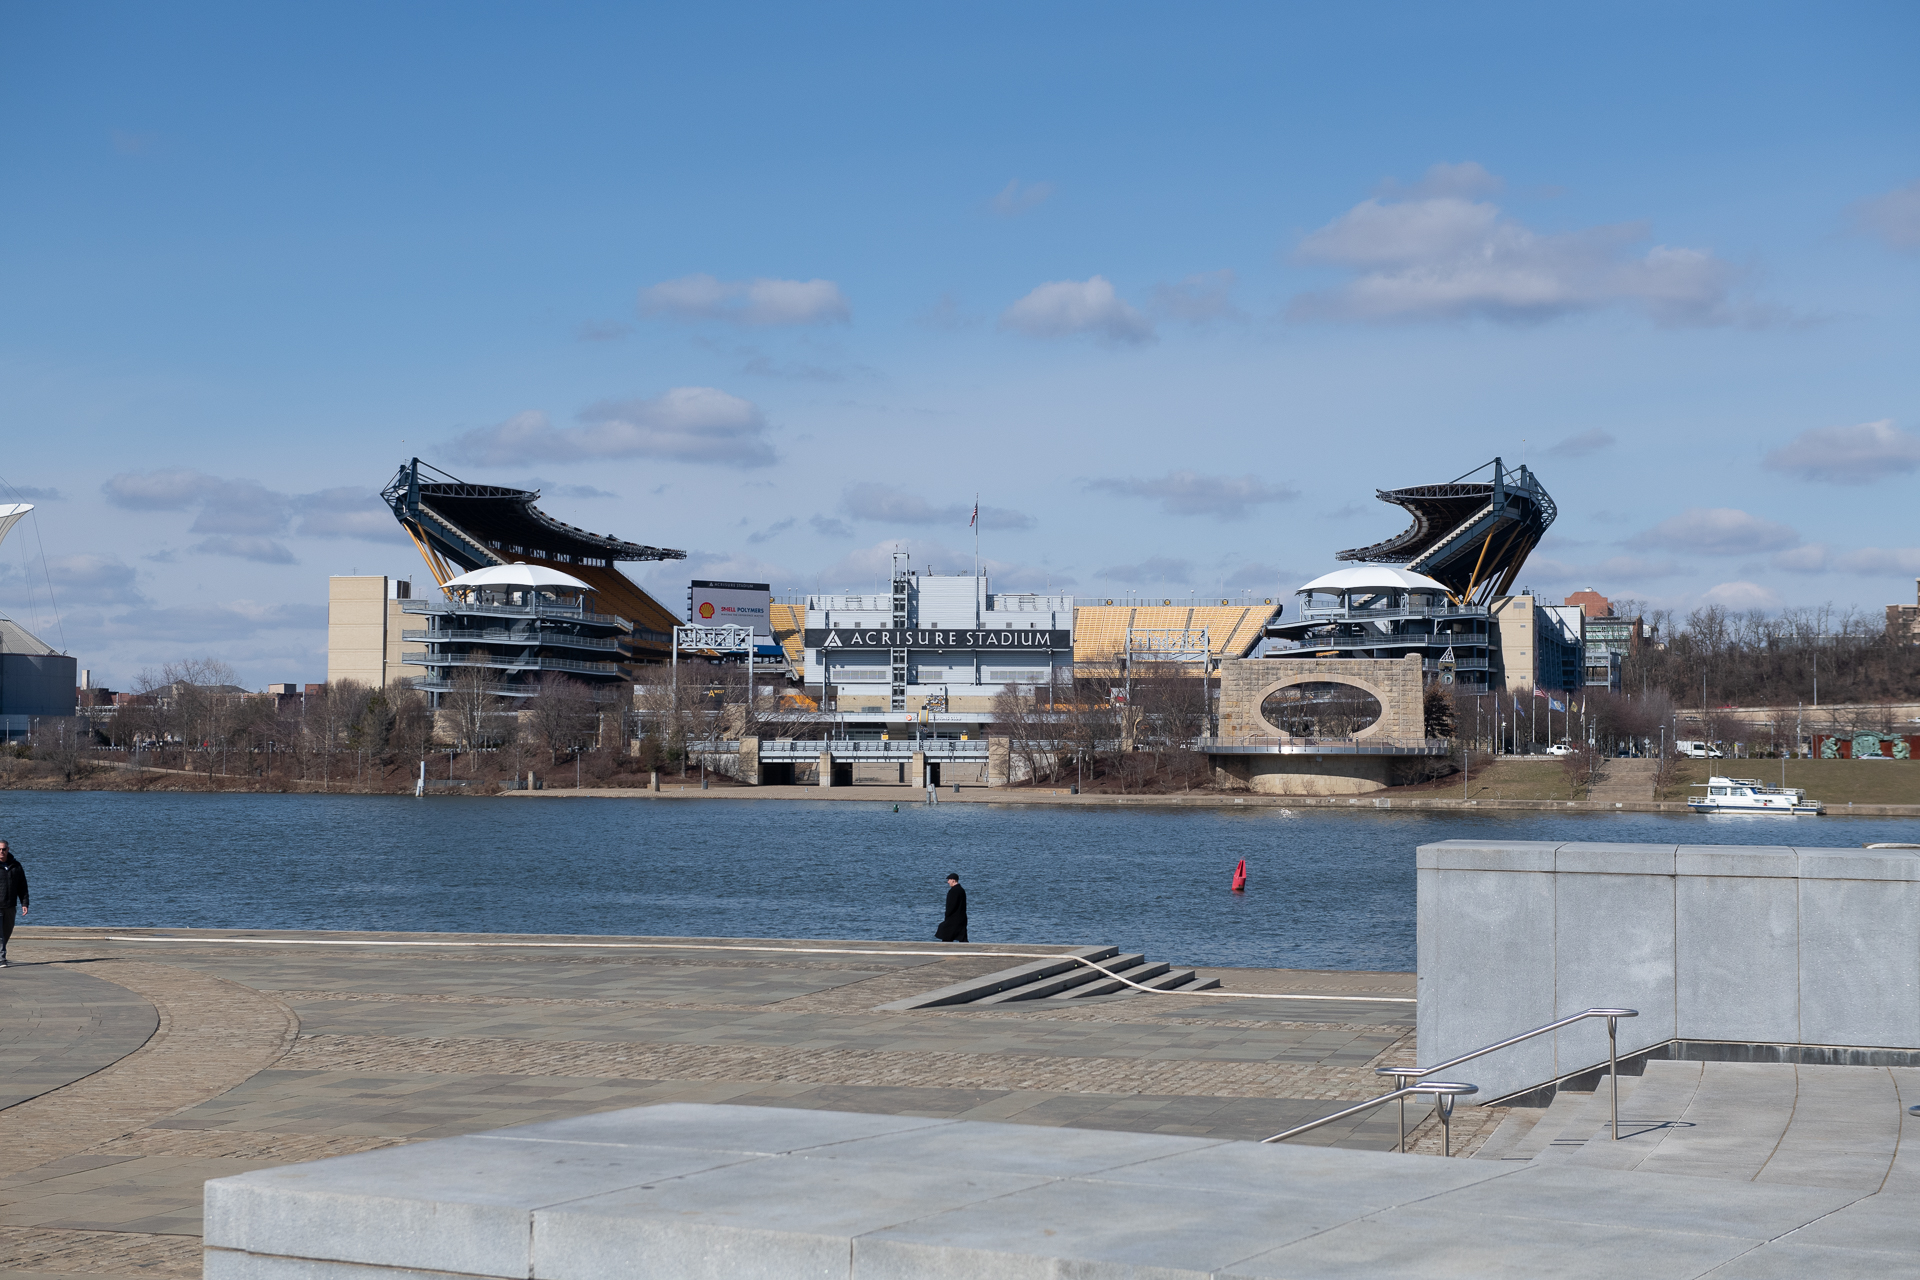 View of Acisure stadium in Pittsburgh